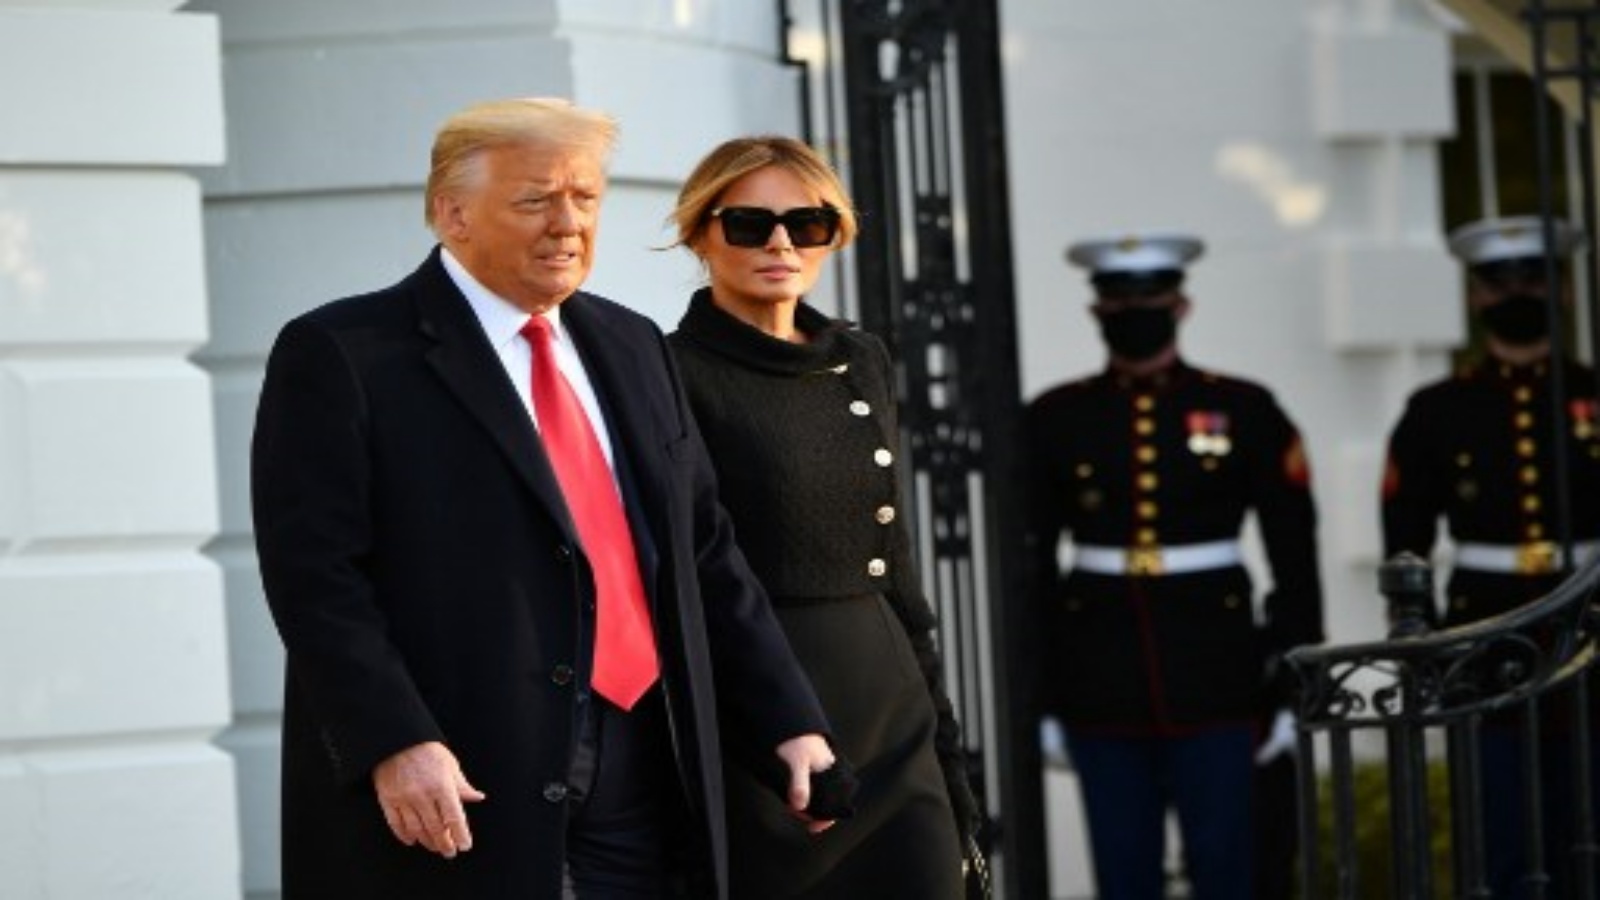 يشق الرئيس الأمريكي دونالد ترامب والسيدة الأولى ميلانيا طريقهما على متن مارين وان قبل مغادرتهما من الحديقة الجنوبية للبيت الأبيض في واشنطن العاصمة في 20 يناير 2021.